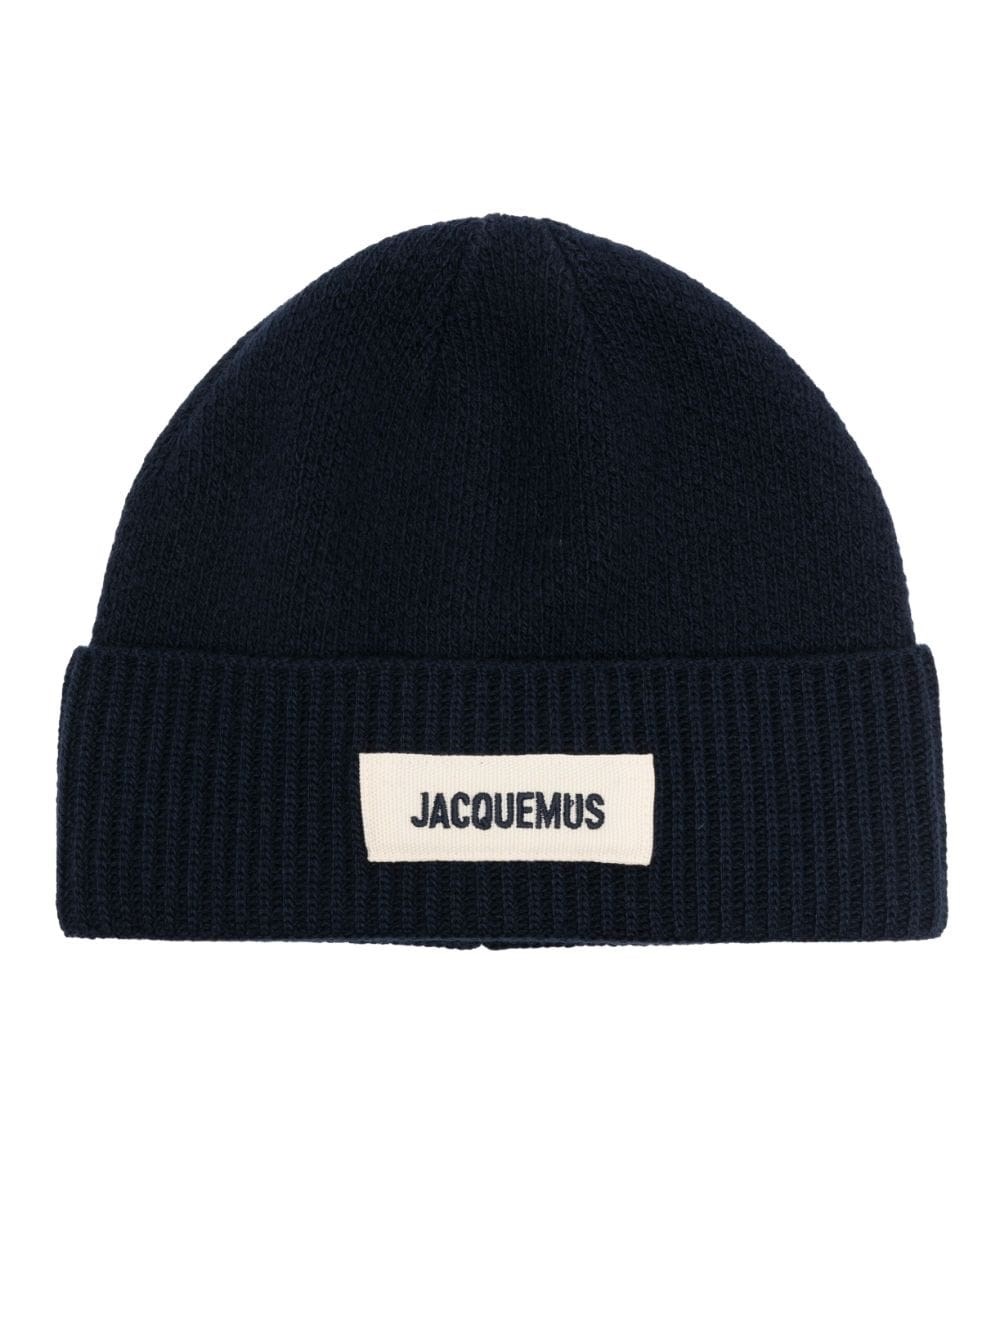 jacquemus le bonnet merino wool beanie